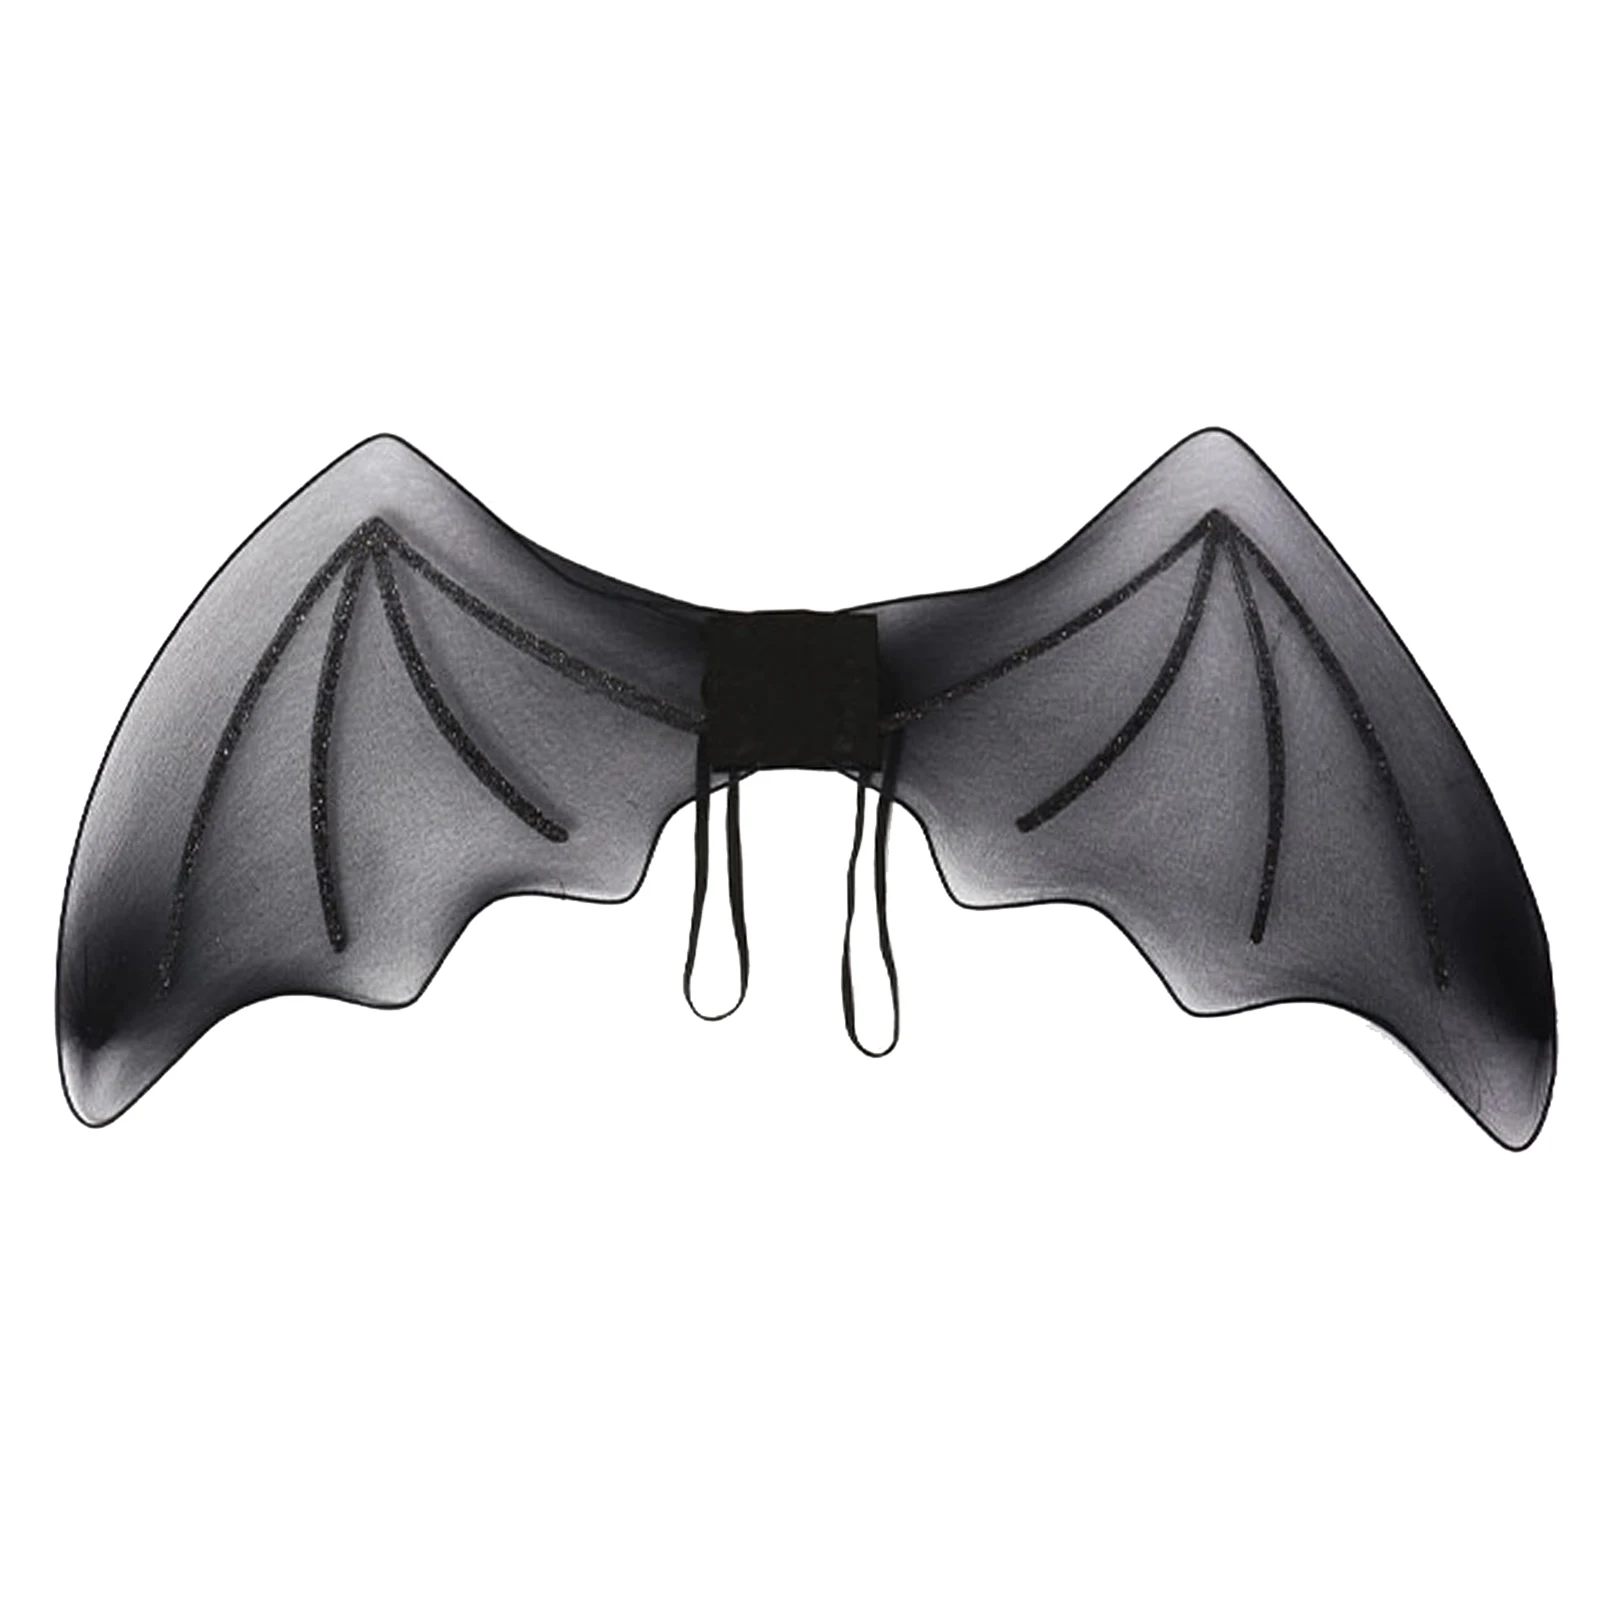 

Little Devil Wings Halloween Easter Fancy Dress Accessory Party Dress Up Supplies Black Bat Wings Angel Wings Performance Props